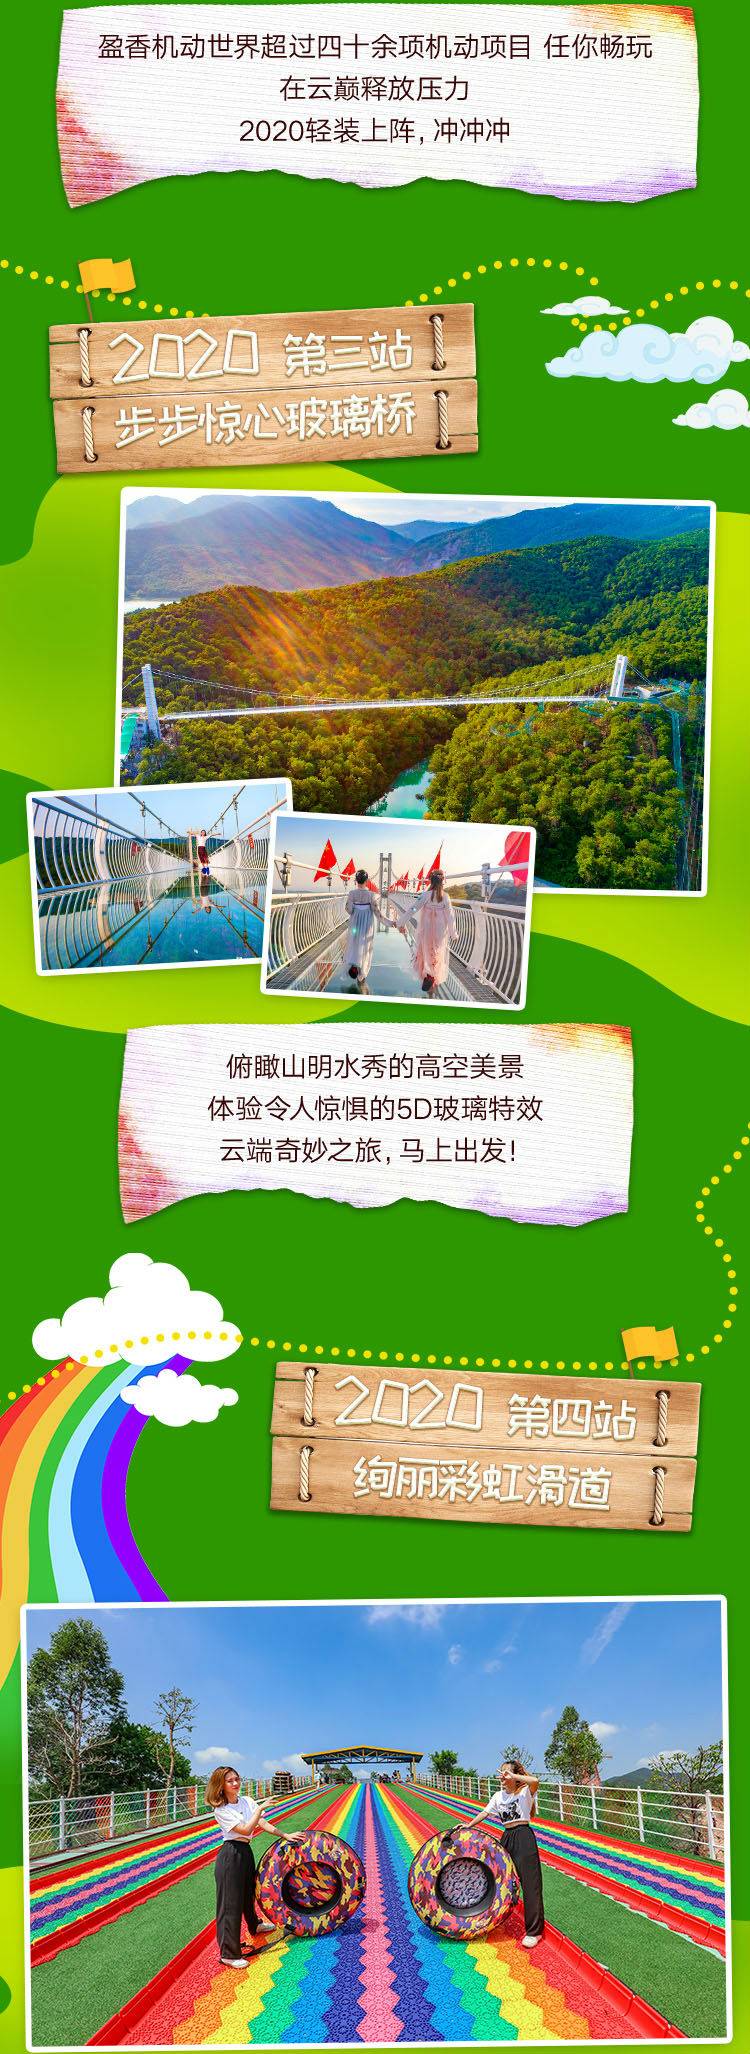 【常规票】盈香生态园成人票1张含玻璃桥1次+机动游戏+四季花海+彩虹滑道